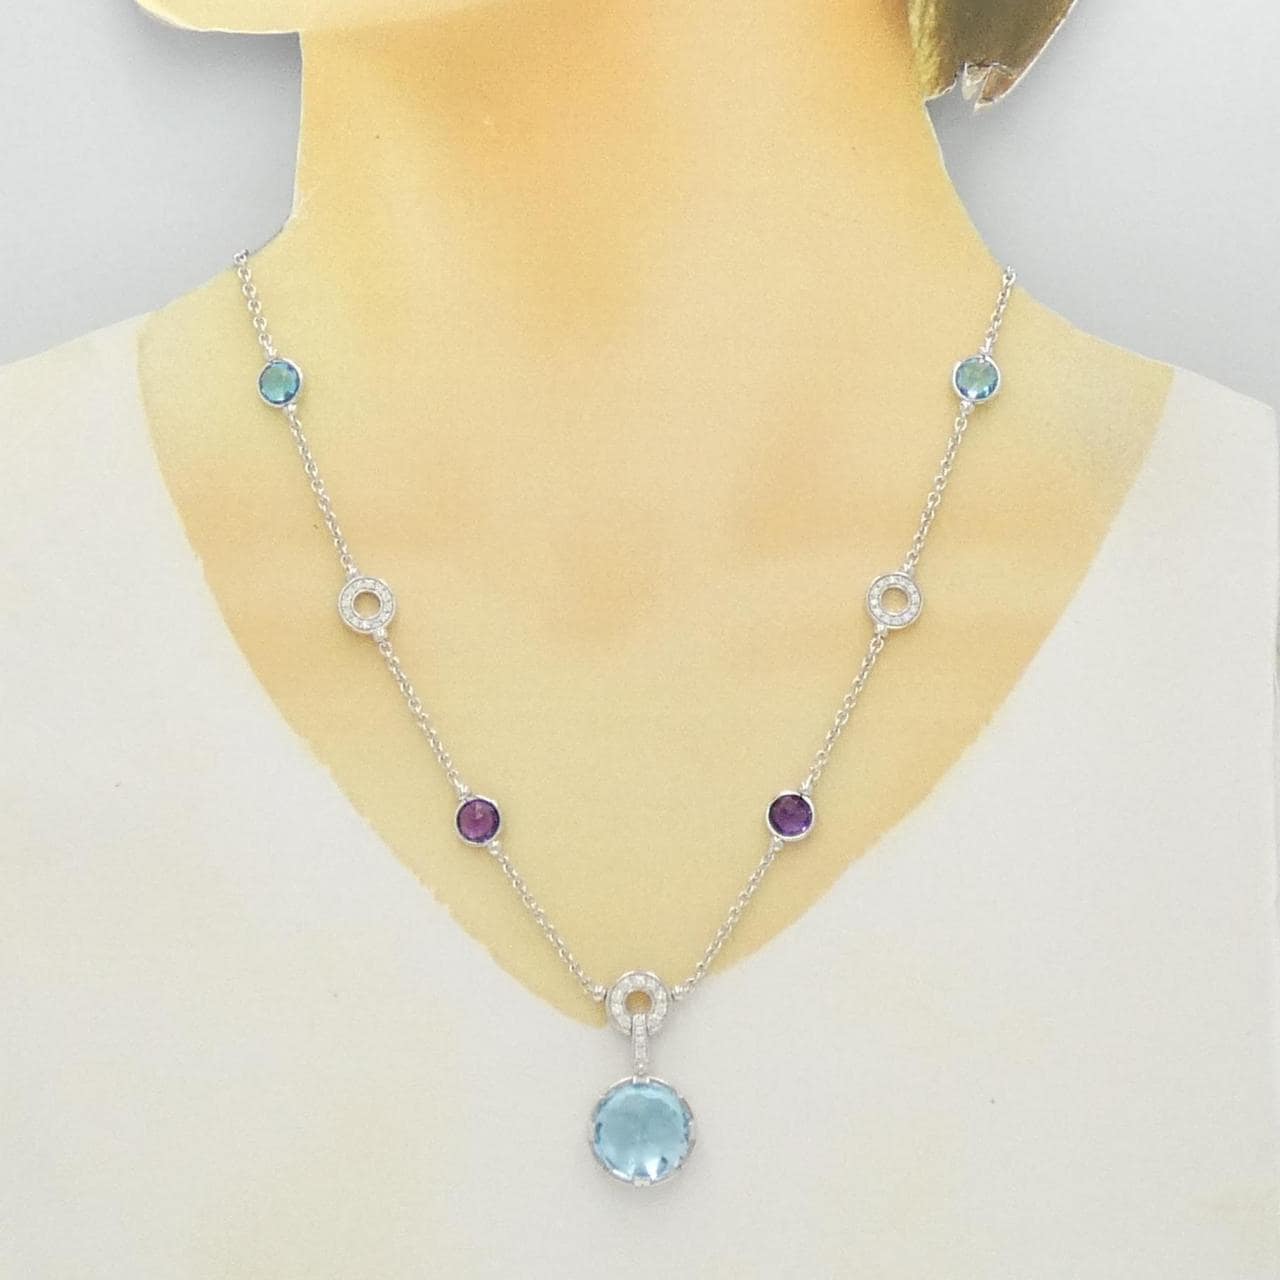 BVLGARI colored stone necklace